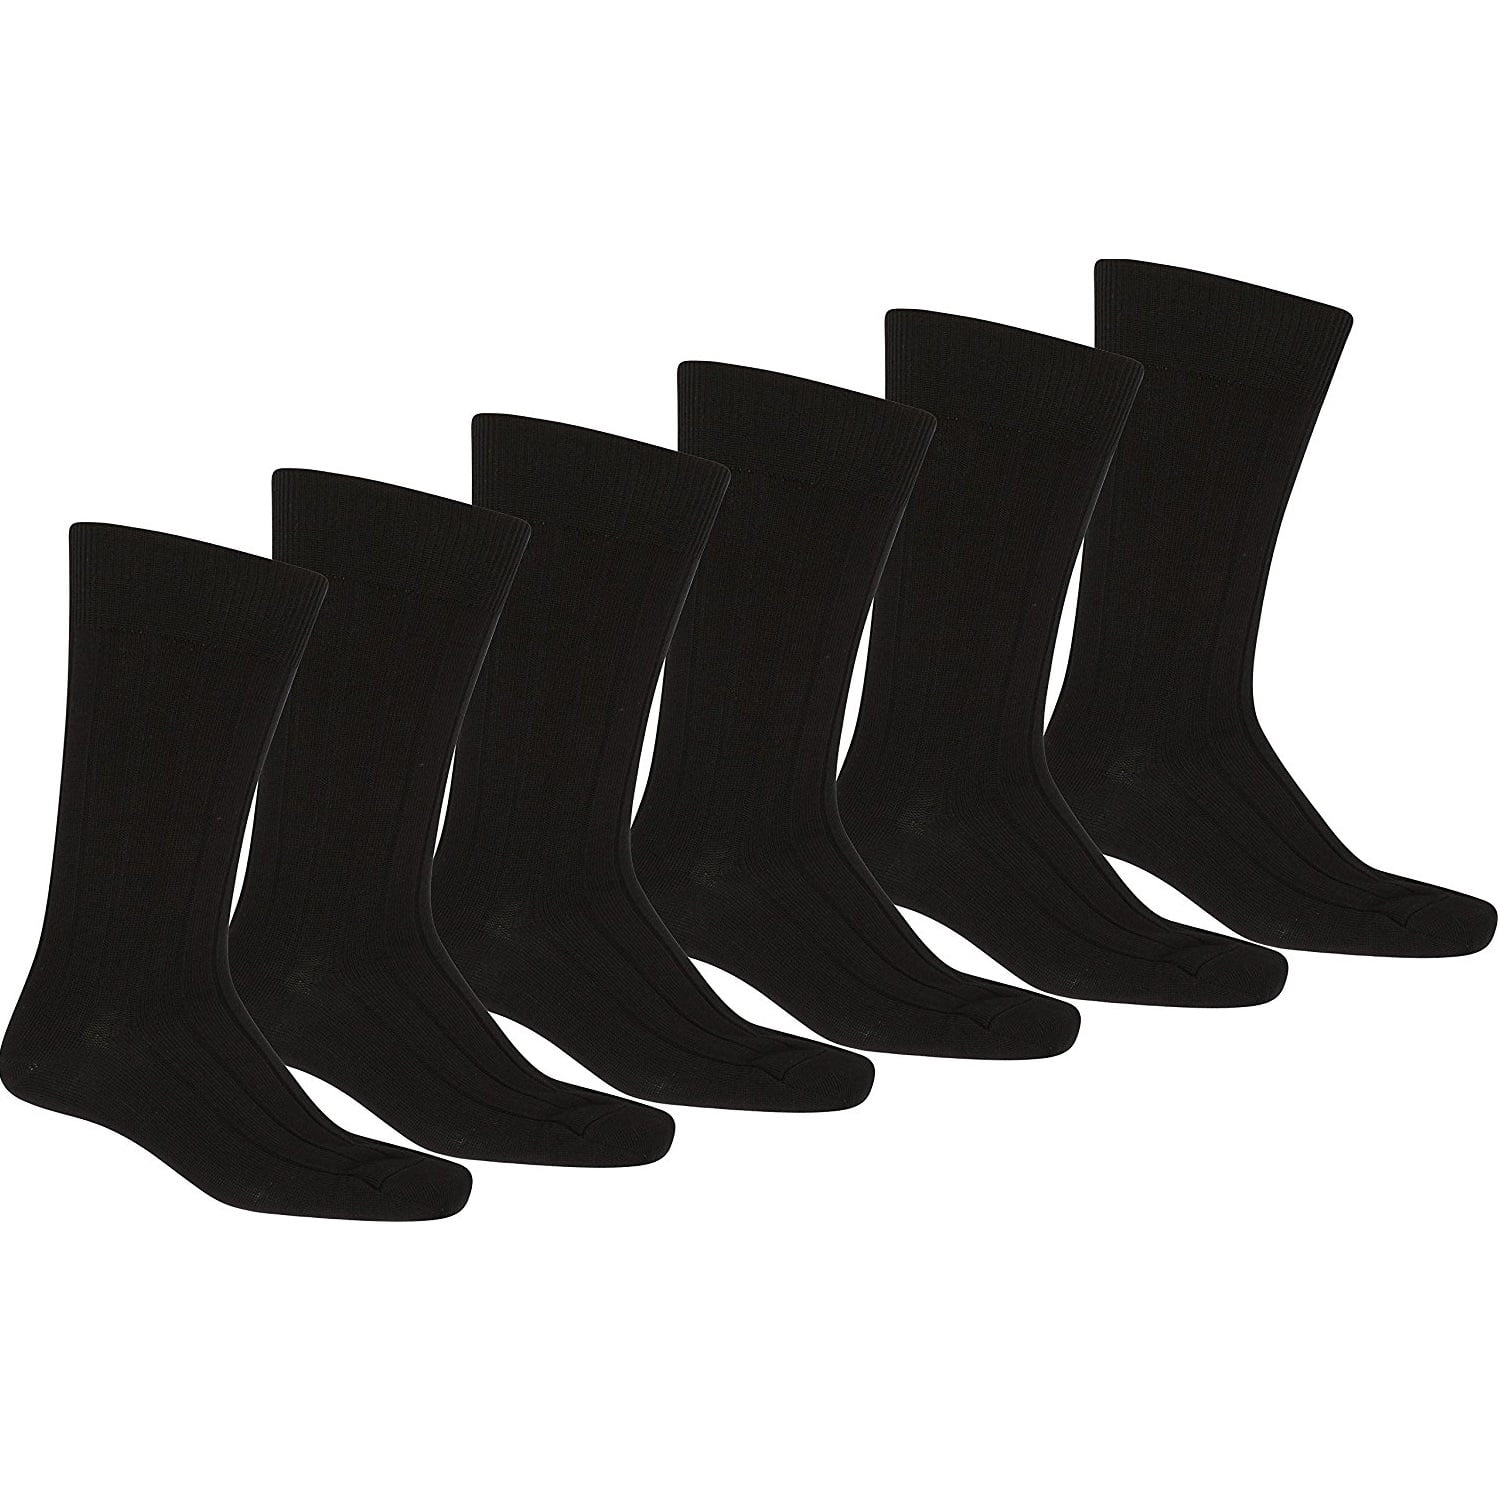 12 Pack of Daily Basic Men Black Solid Plain Dress Socks (9-11)